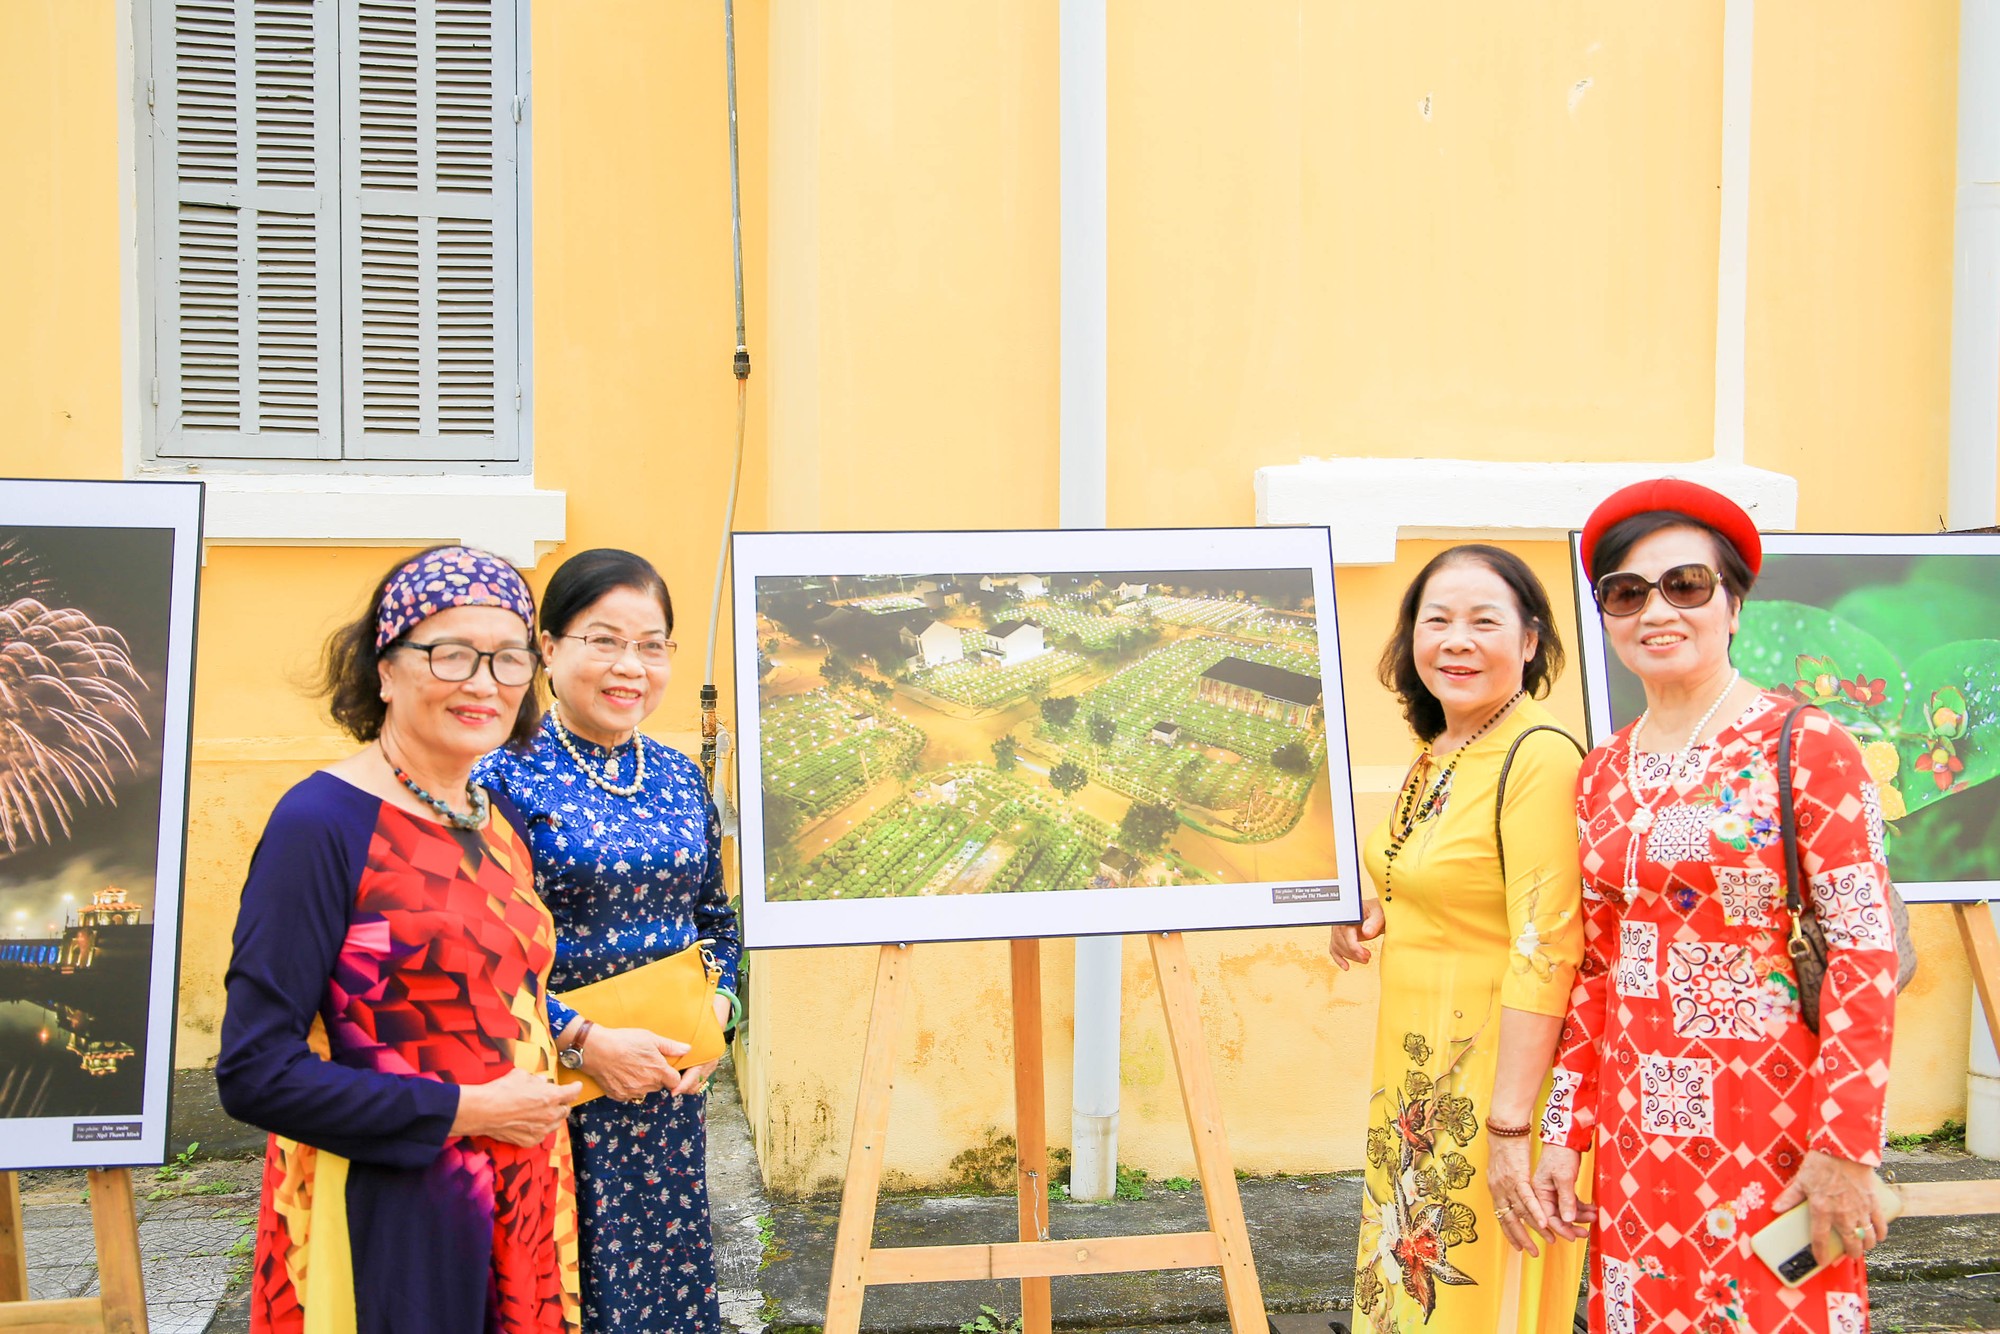 Triển lãm được tổ chức từ ngày 31/1 – 29/2 tại 23 – 25 Lê Lợi, TP Huế nhân dịp chào đón năm Giáp Thìn, đồng thời hưởng ứng Festival Tết Huế 2024.